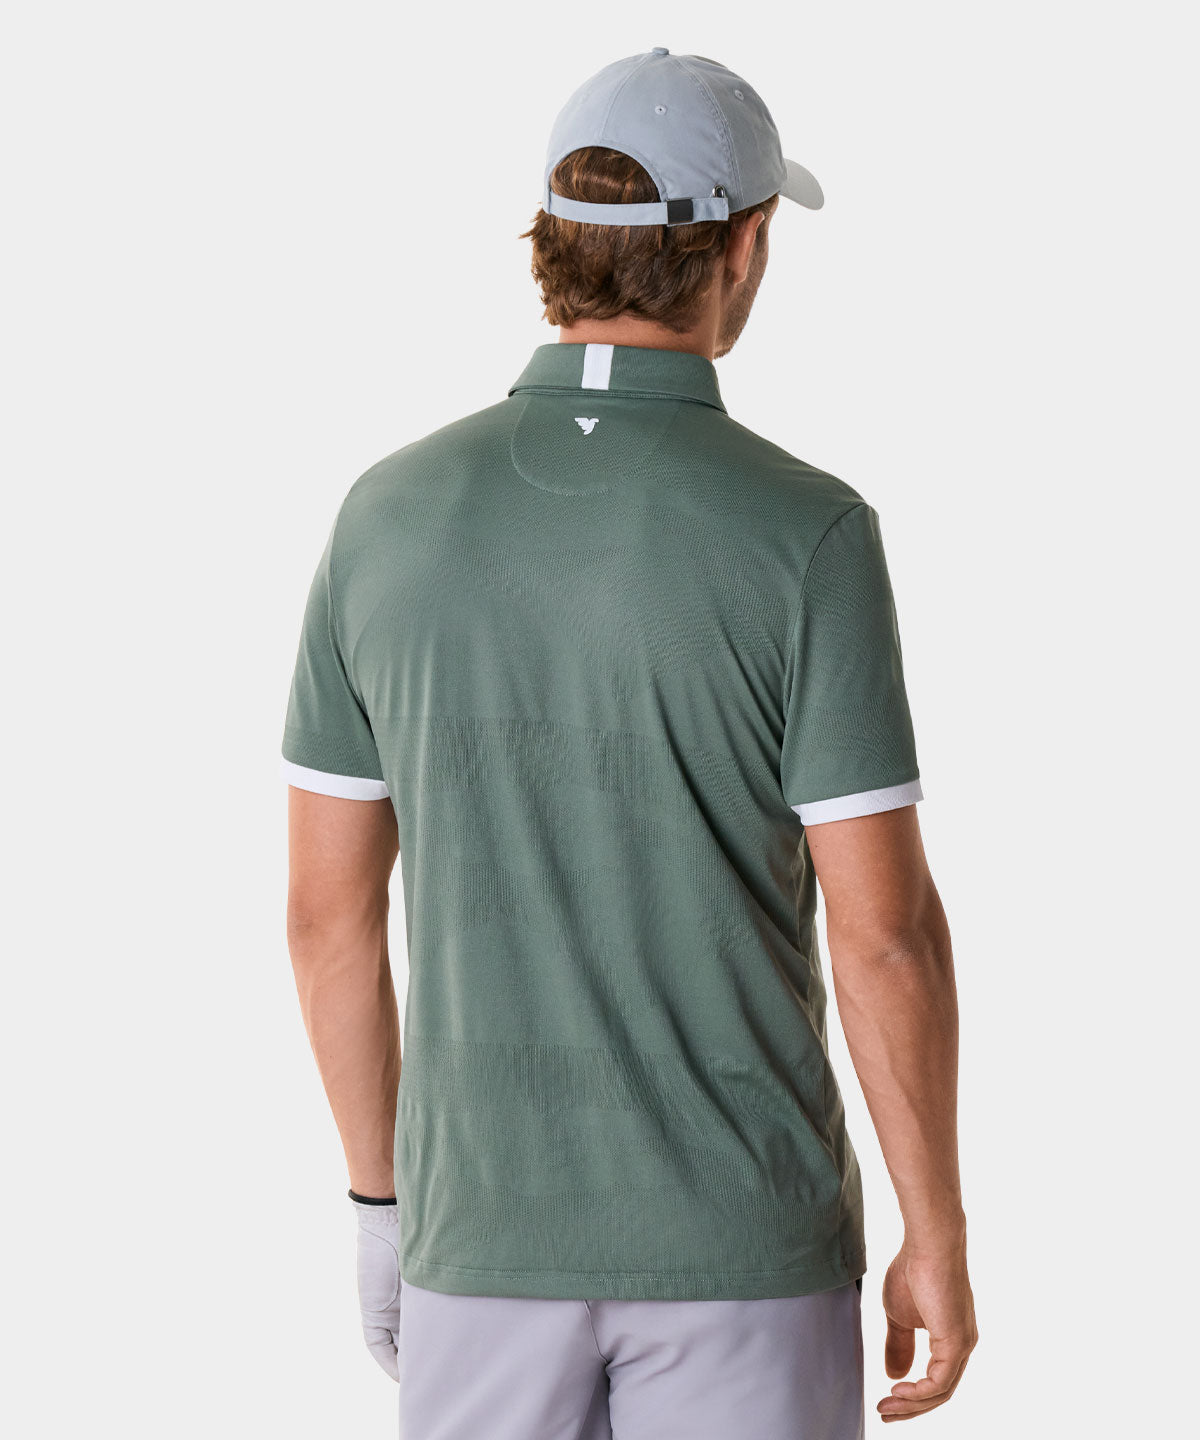 Cole Green Performance Shirt Macade Golf